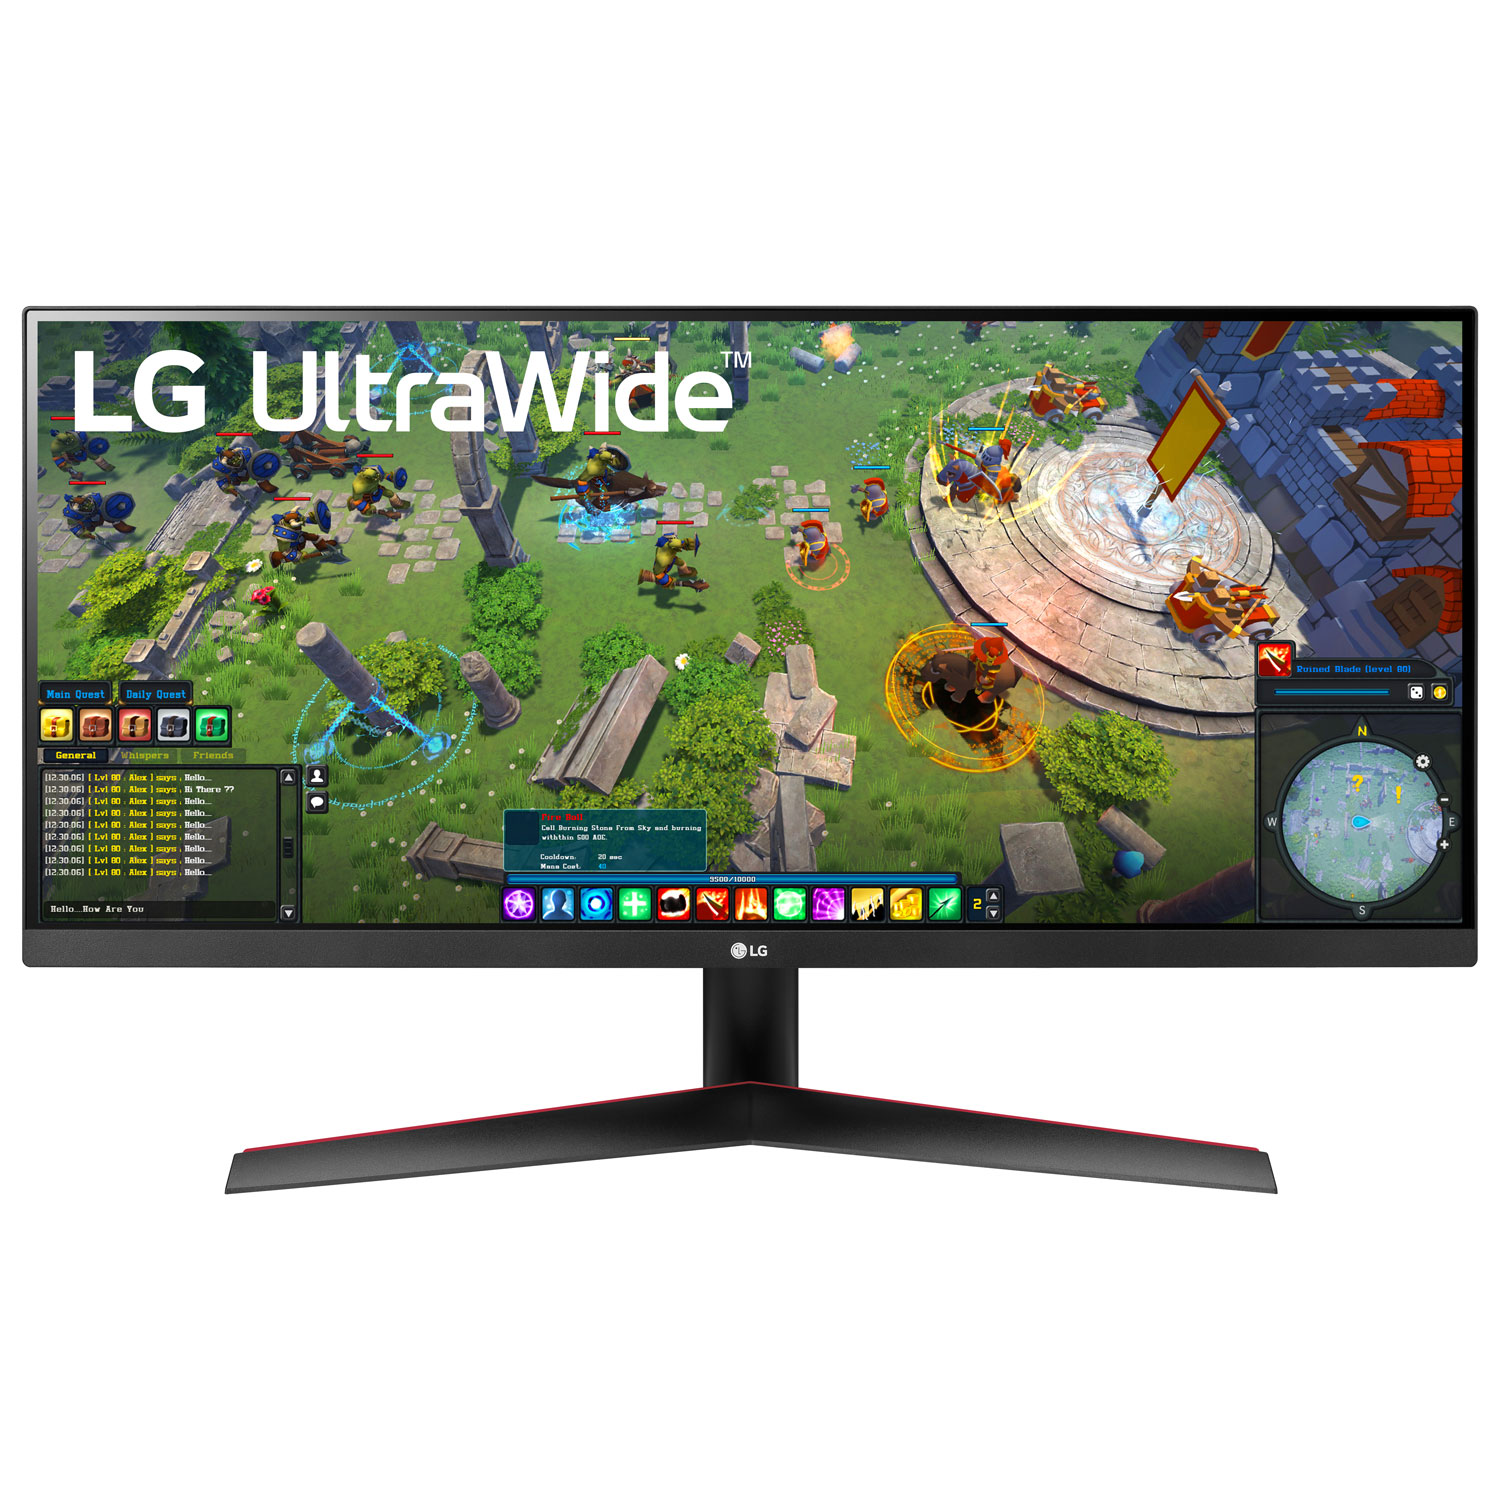 Monitor UltraWide de 29, UWFHD 2560 x 1080, 75Hz, Panel IPS, AMD